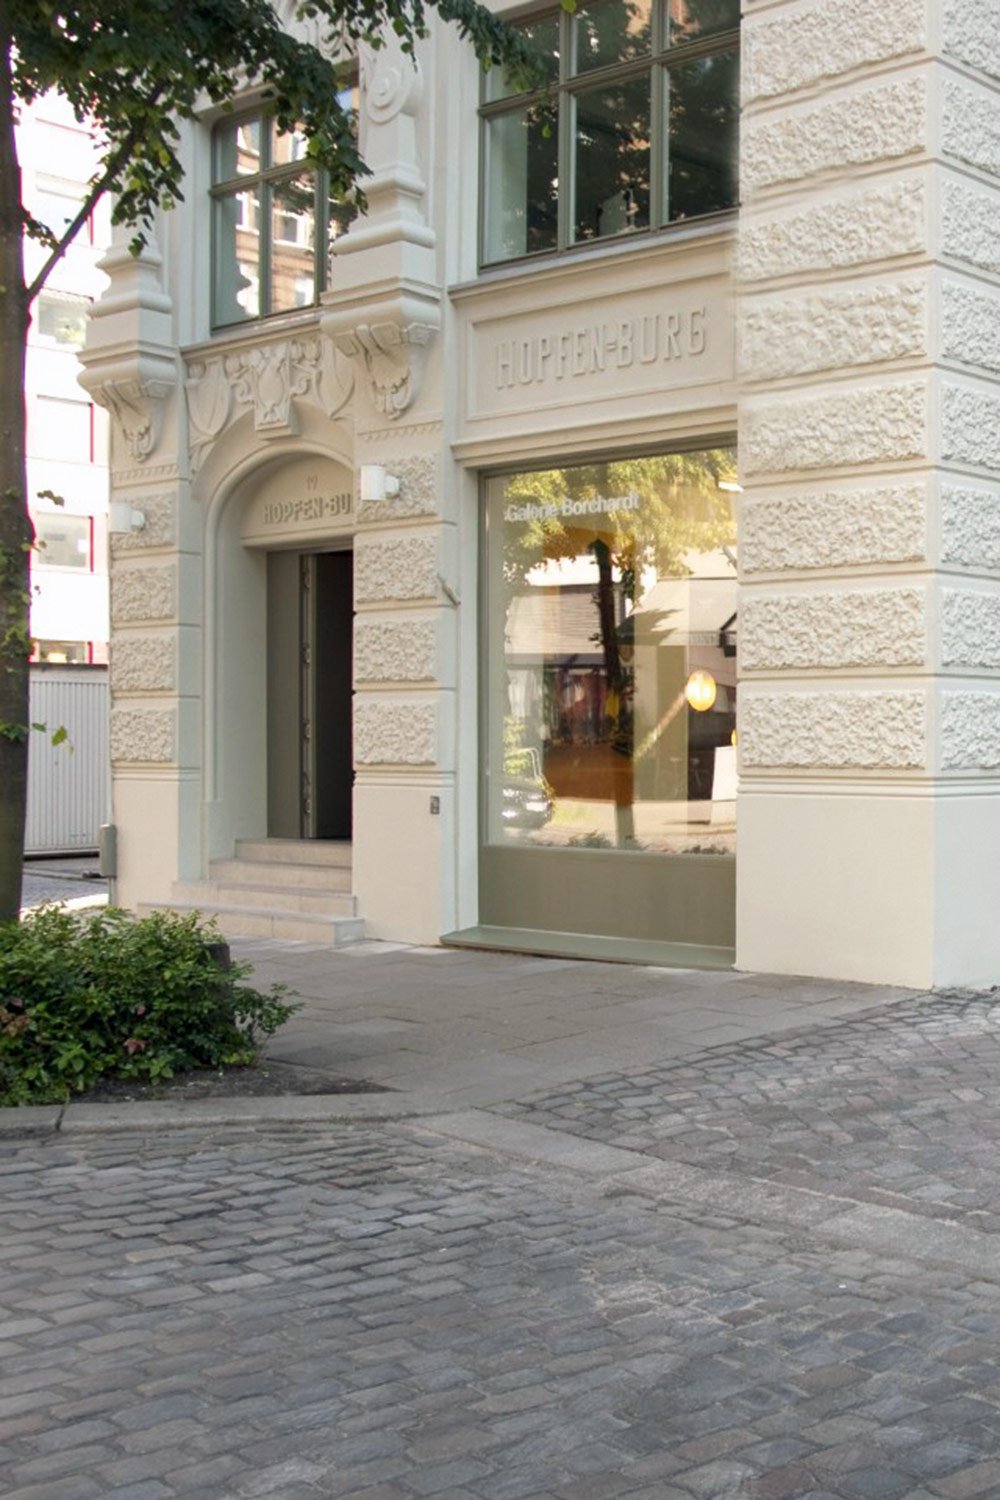 Die Galerie Borchardt in einem ehemaligen Kontorhaus im Stadtzentrum hat sich vor allem mit dem Schwerpunkt Design und Architektur einen Namen gemacht.